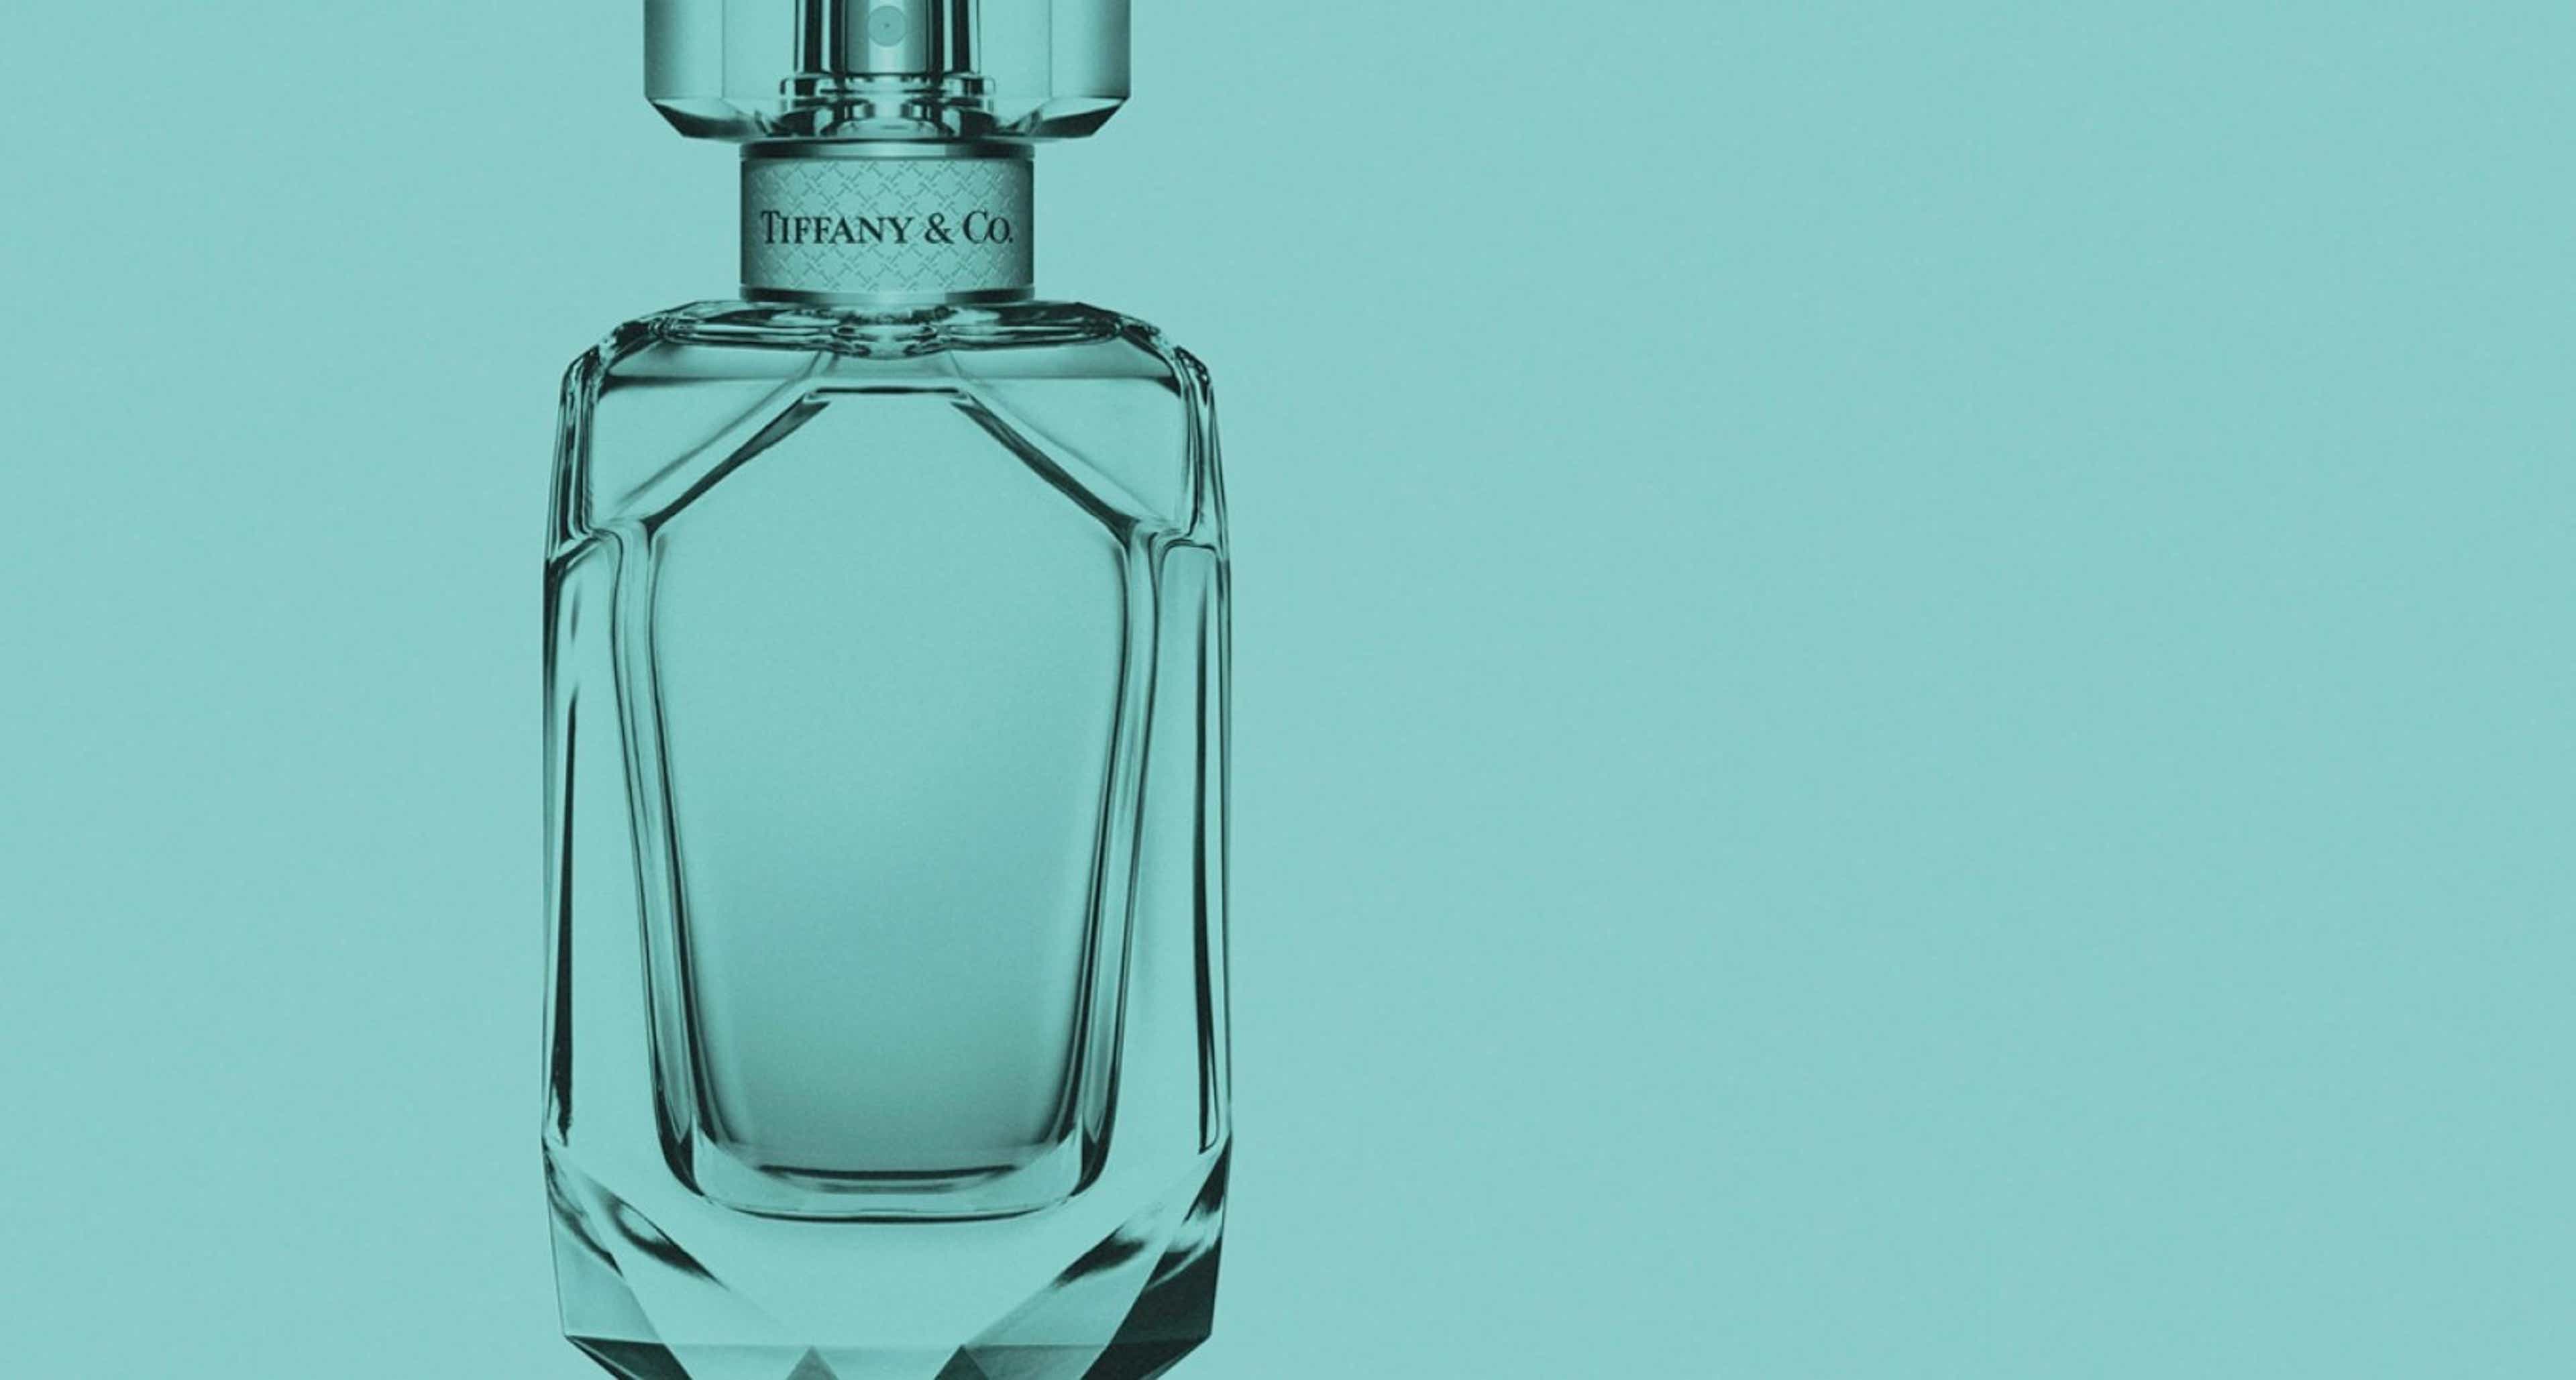 Coty launches Tiffany & Co. eau de parfum